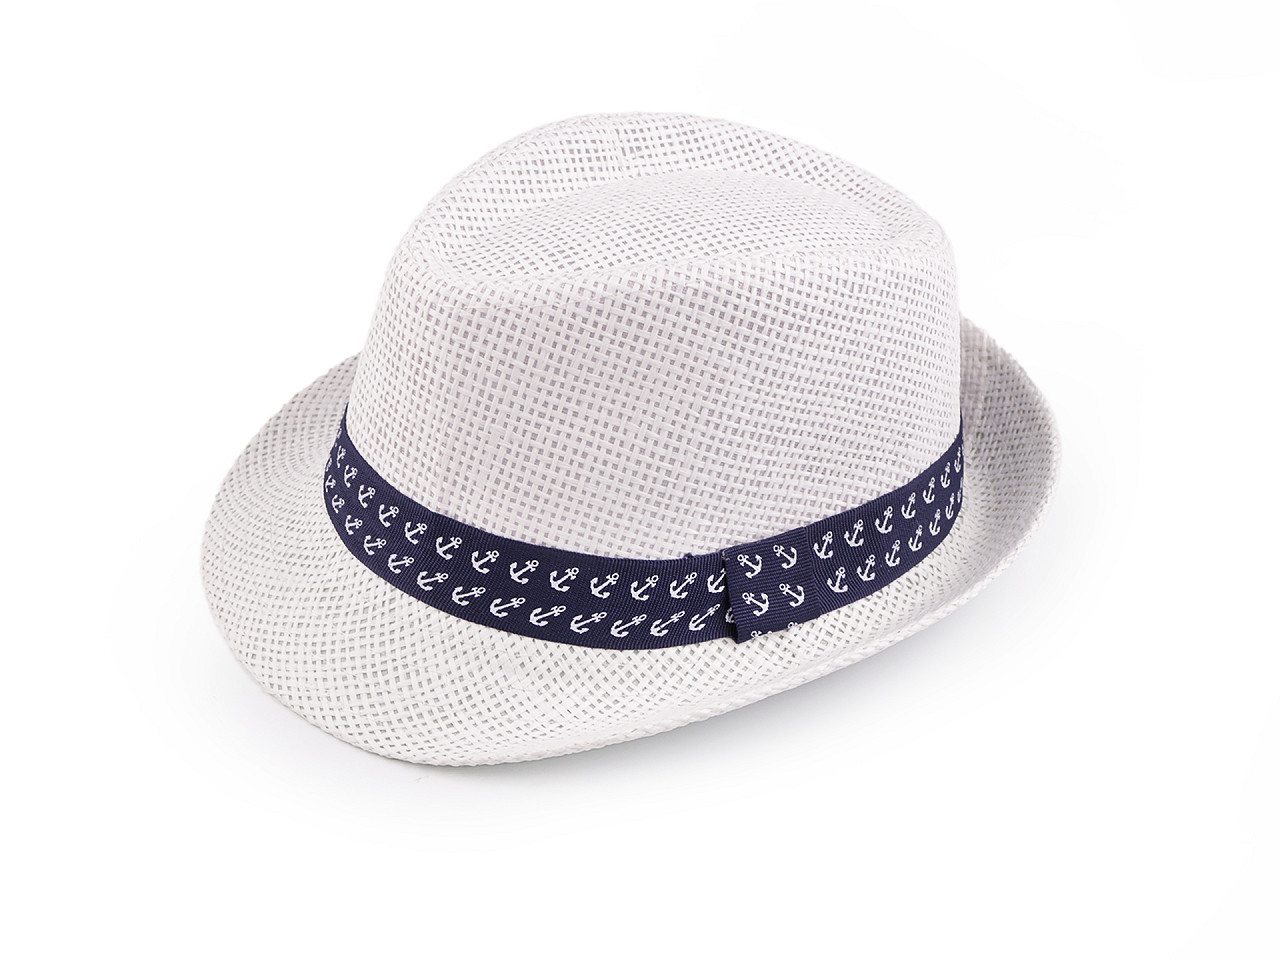 Dětský letní klobouk / slamák, barva 10 (52 cm) bílá